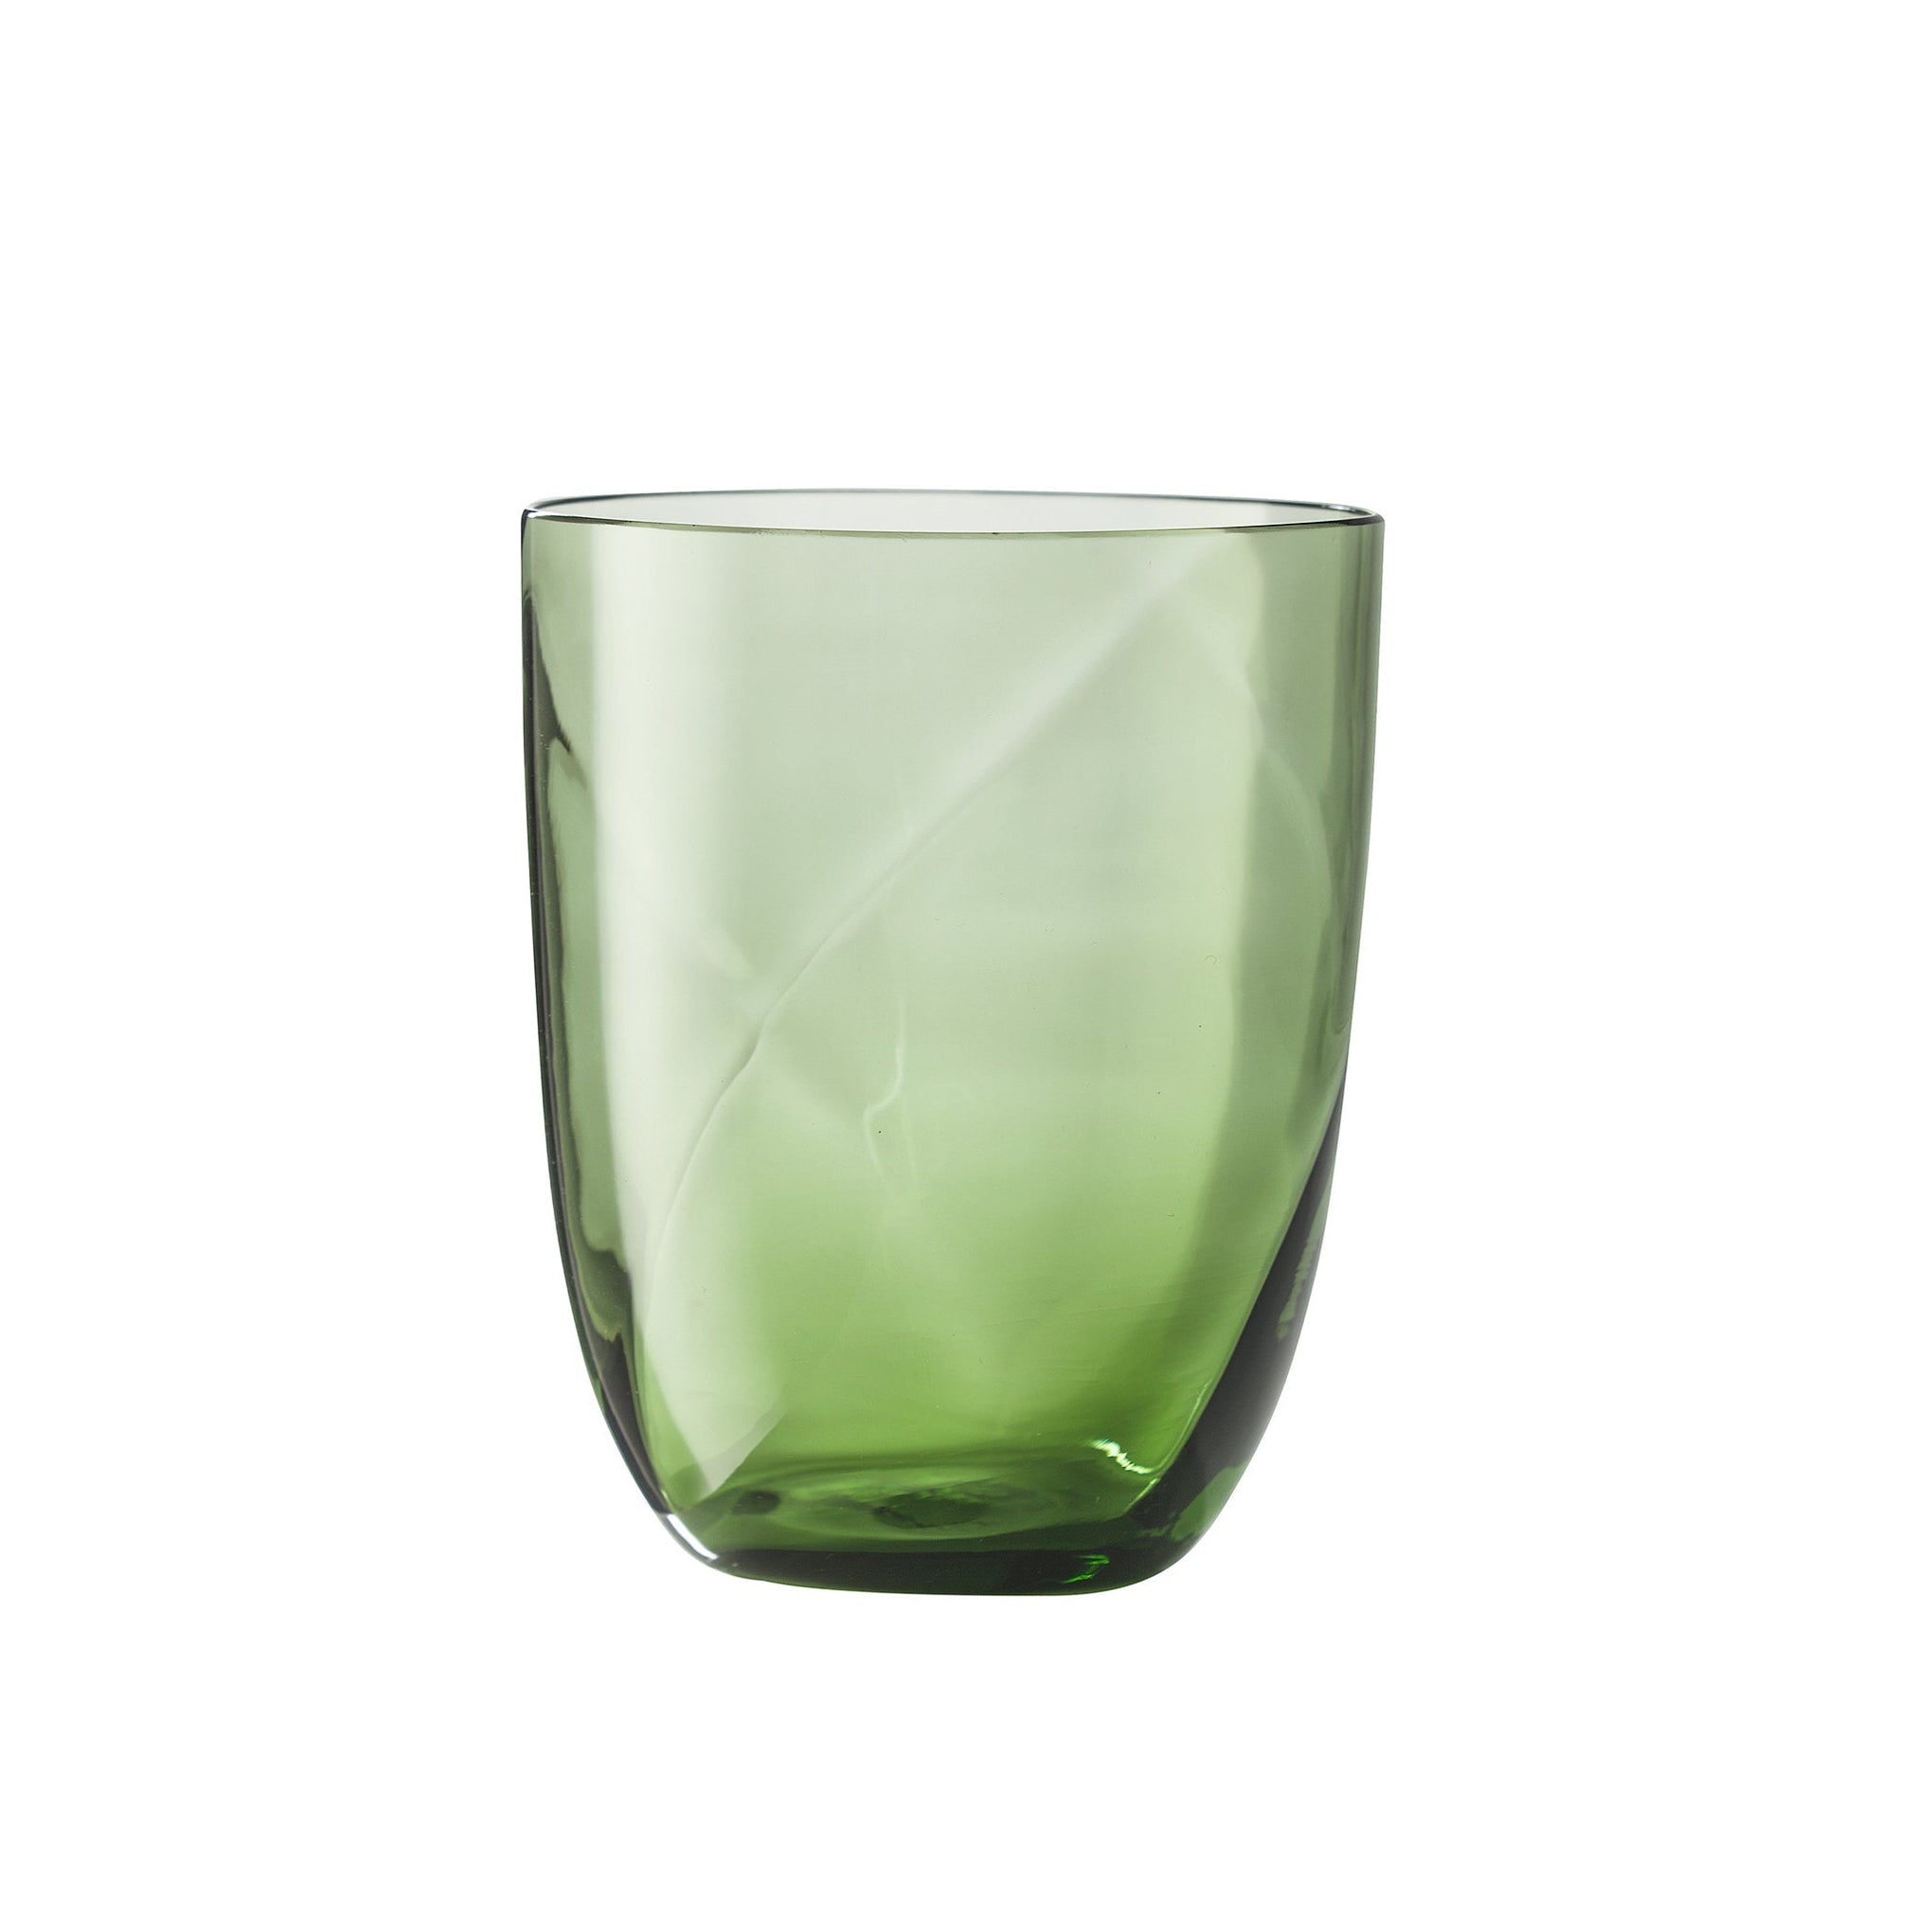 Nason Moretti Idra Murano Water Glasses Pistachio Green